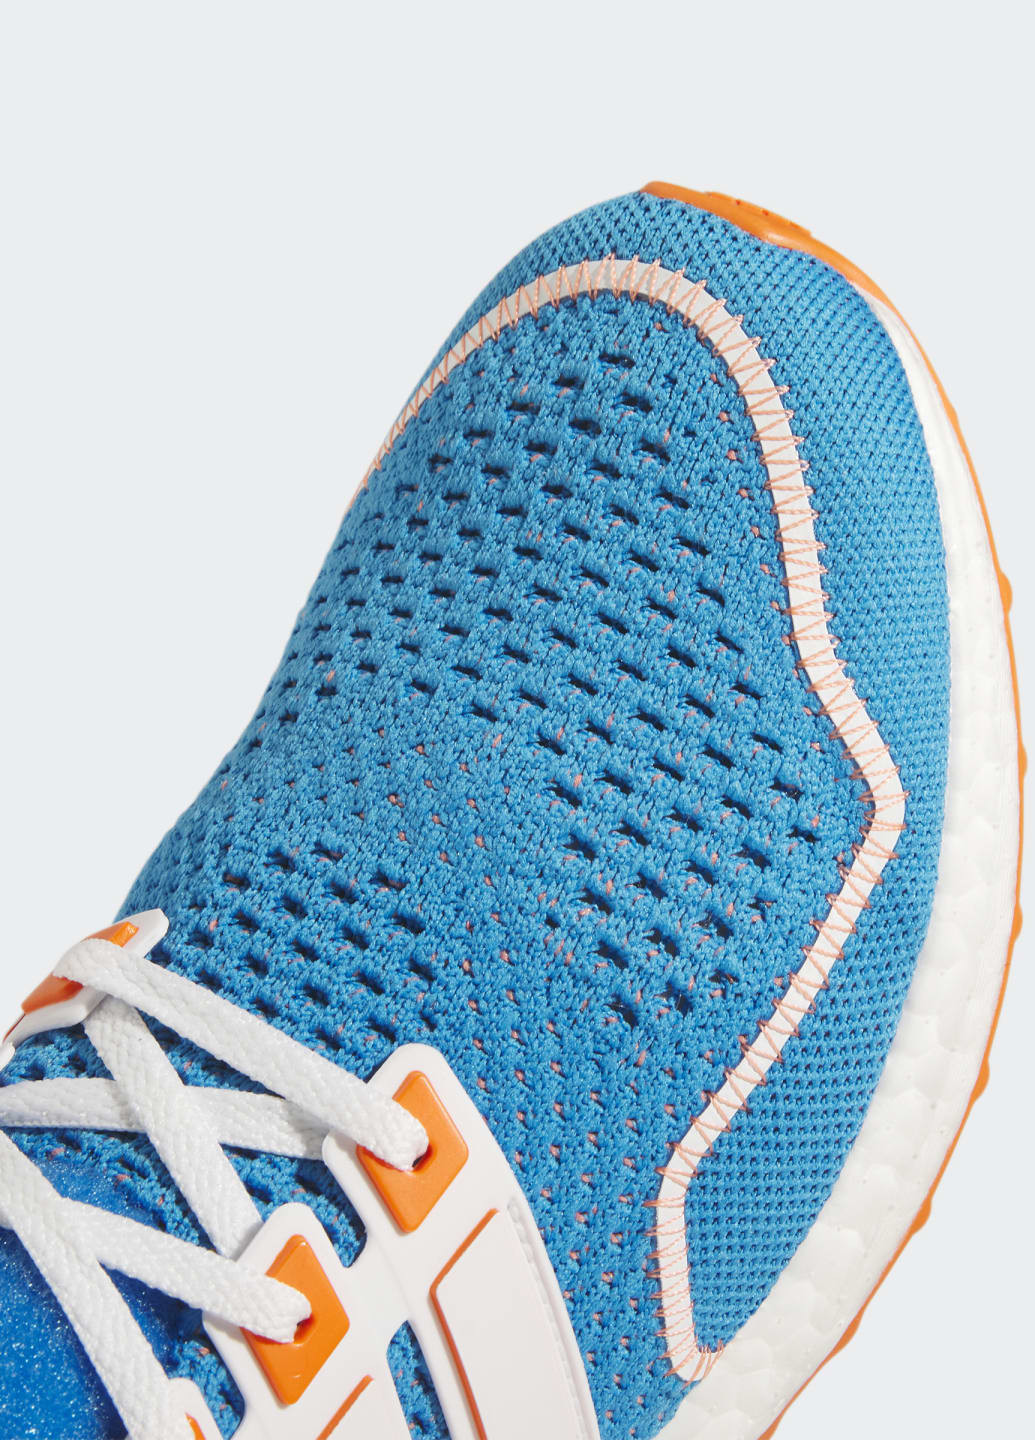 Синие всесезонные кроссовки ultraboost 1.0 adidas